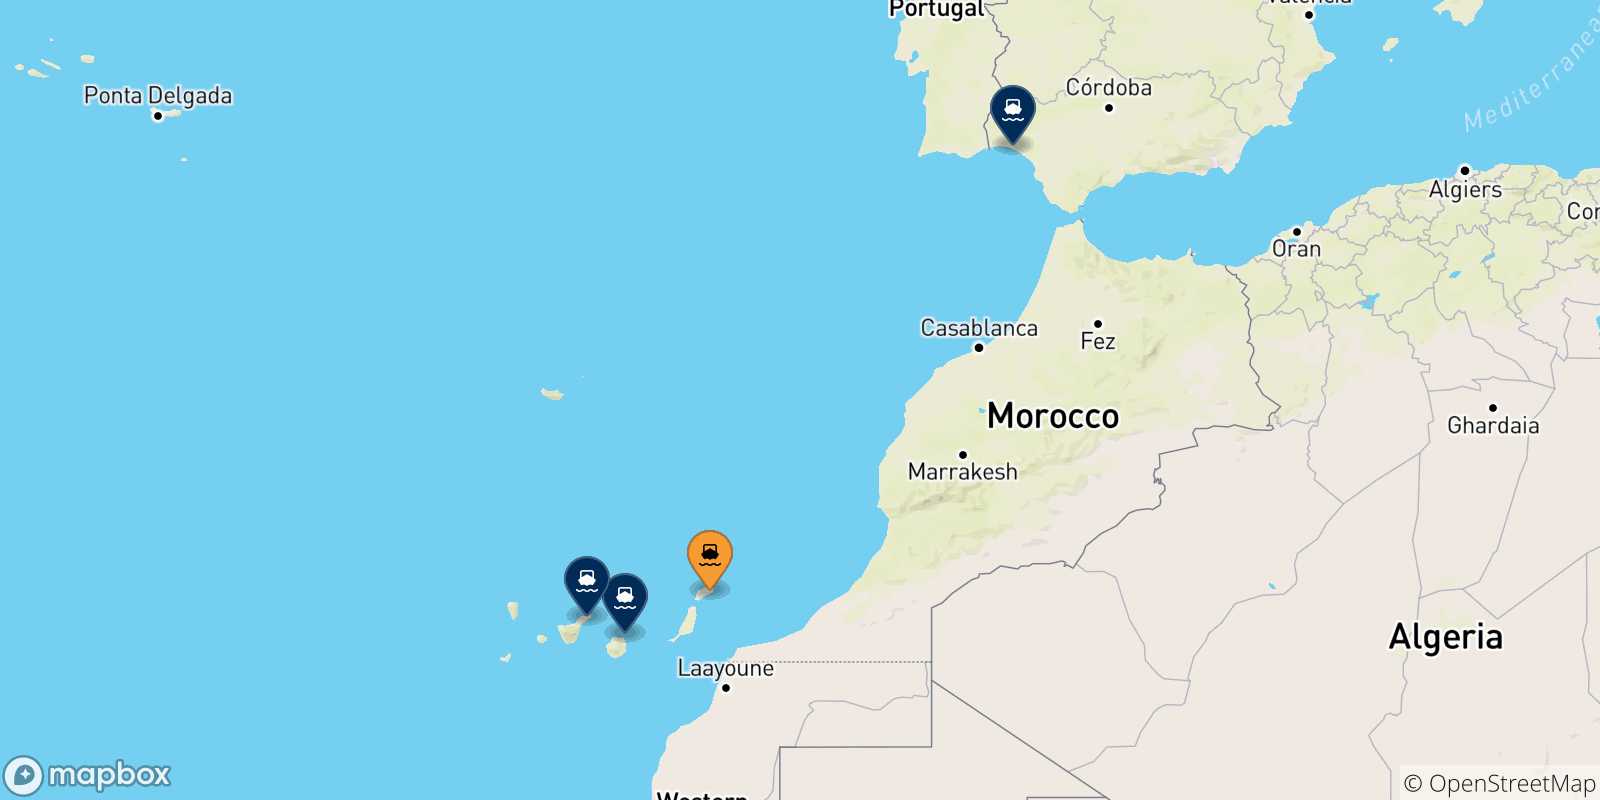 Carte des traversées possibles entre Arrecife (Lanzarote) et l'Espagne